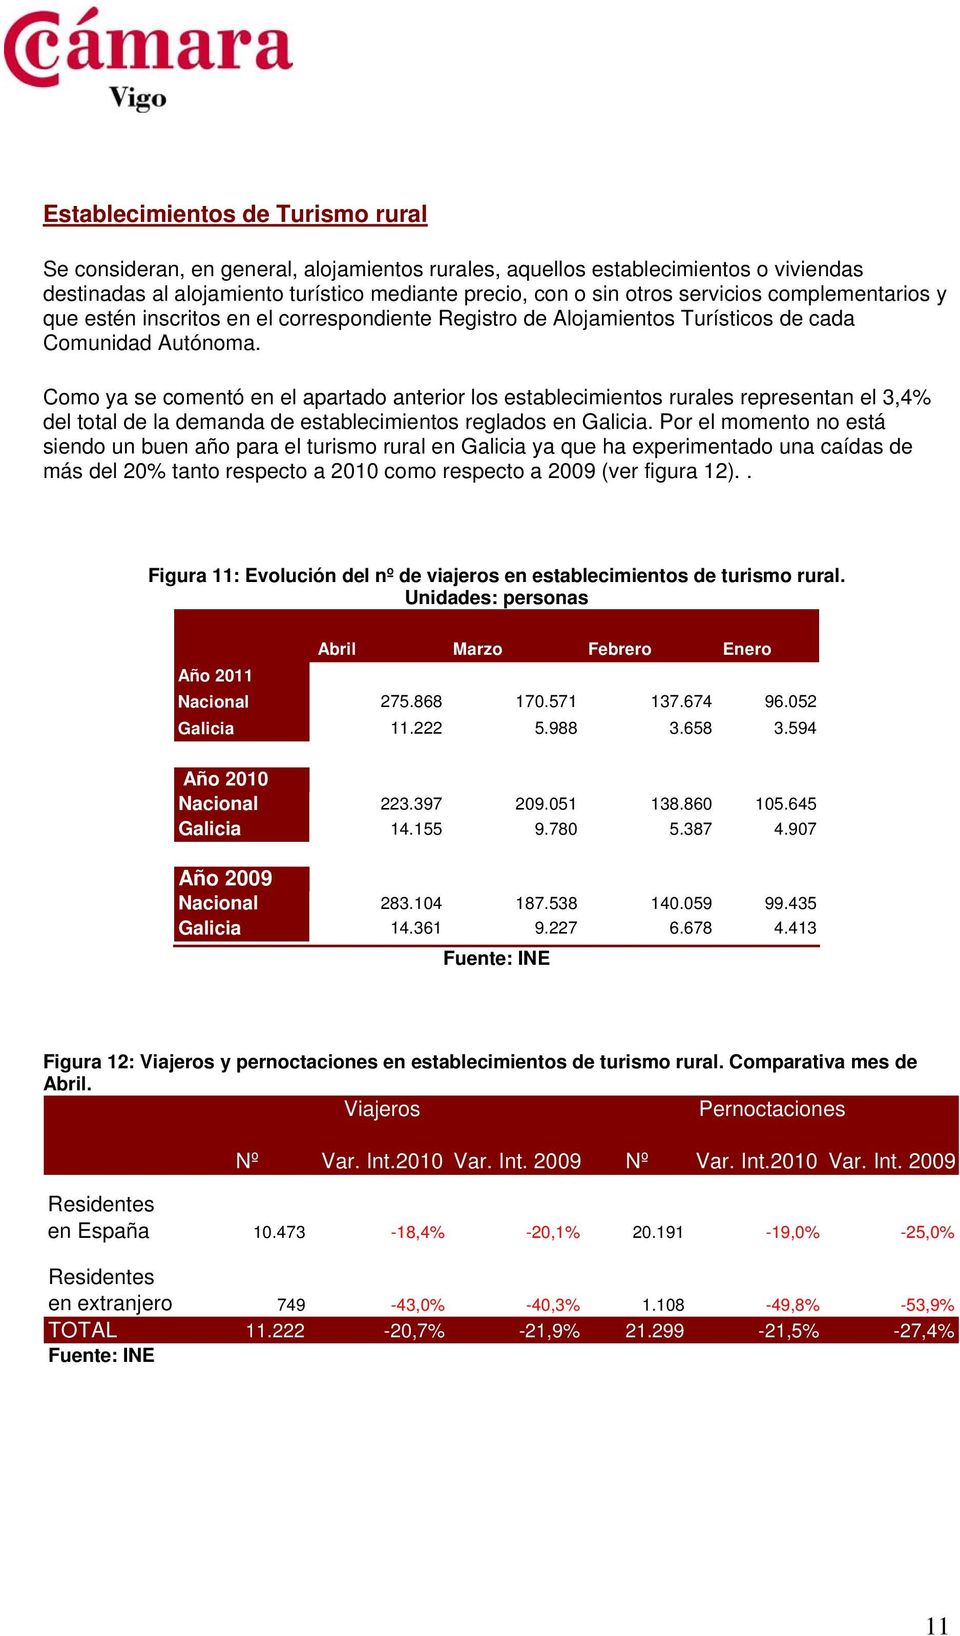 Como ya se comentó en el apartado anterior los establecimientos rurales representan el 3,4% del total de la demanda de establecimientos reglados en Galicia.